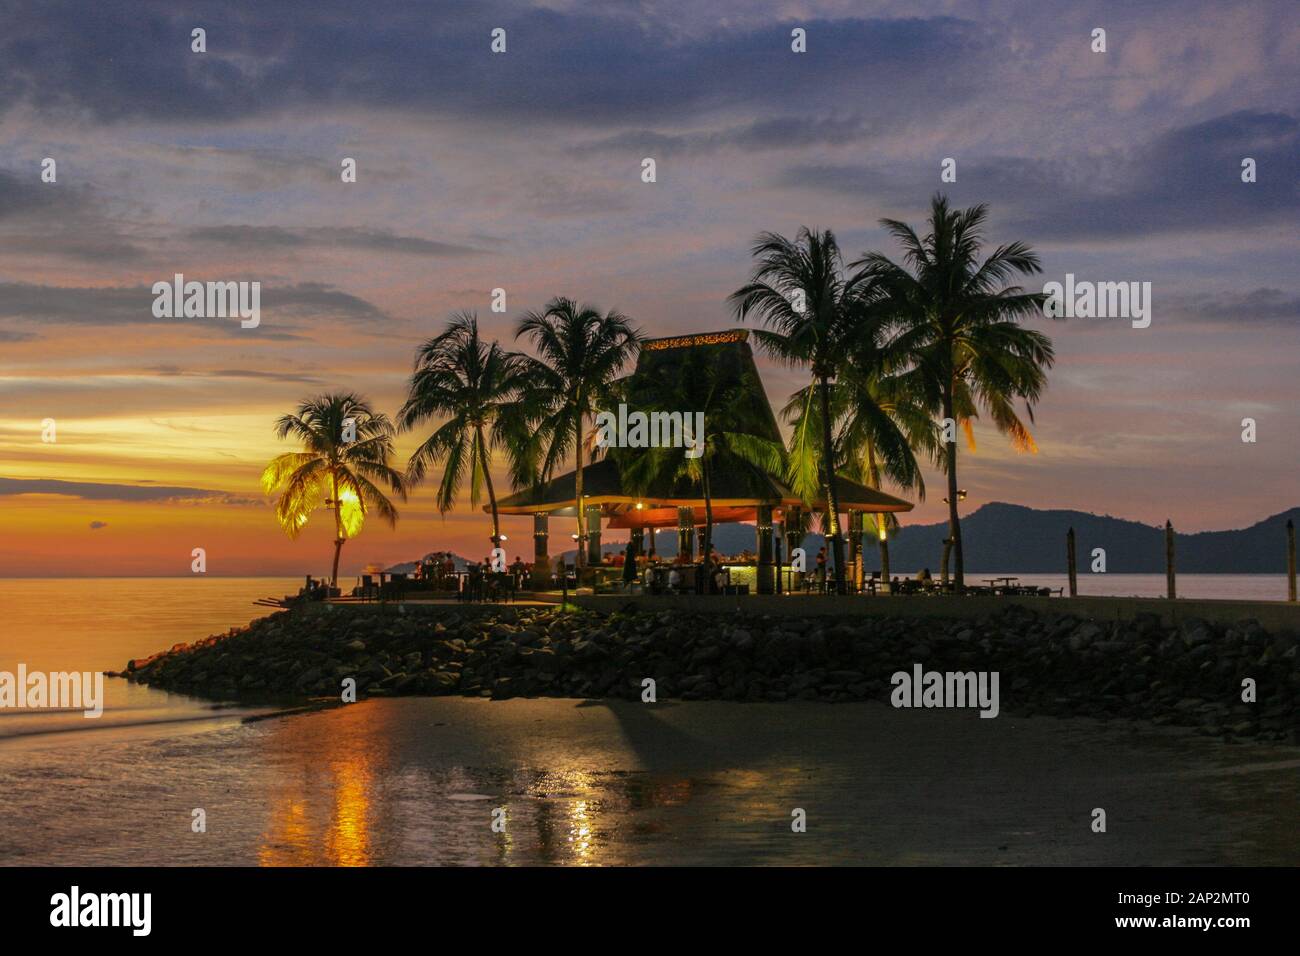 Sunset at Shangri-La Tanjung Aru resort in Kota Kinabalu, Borneo 